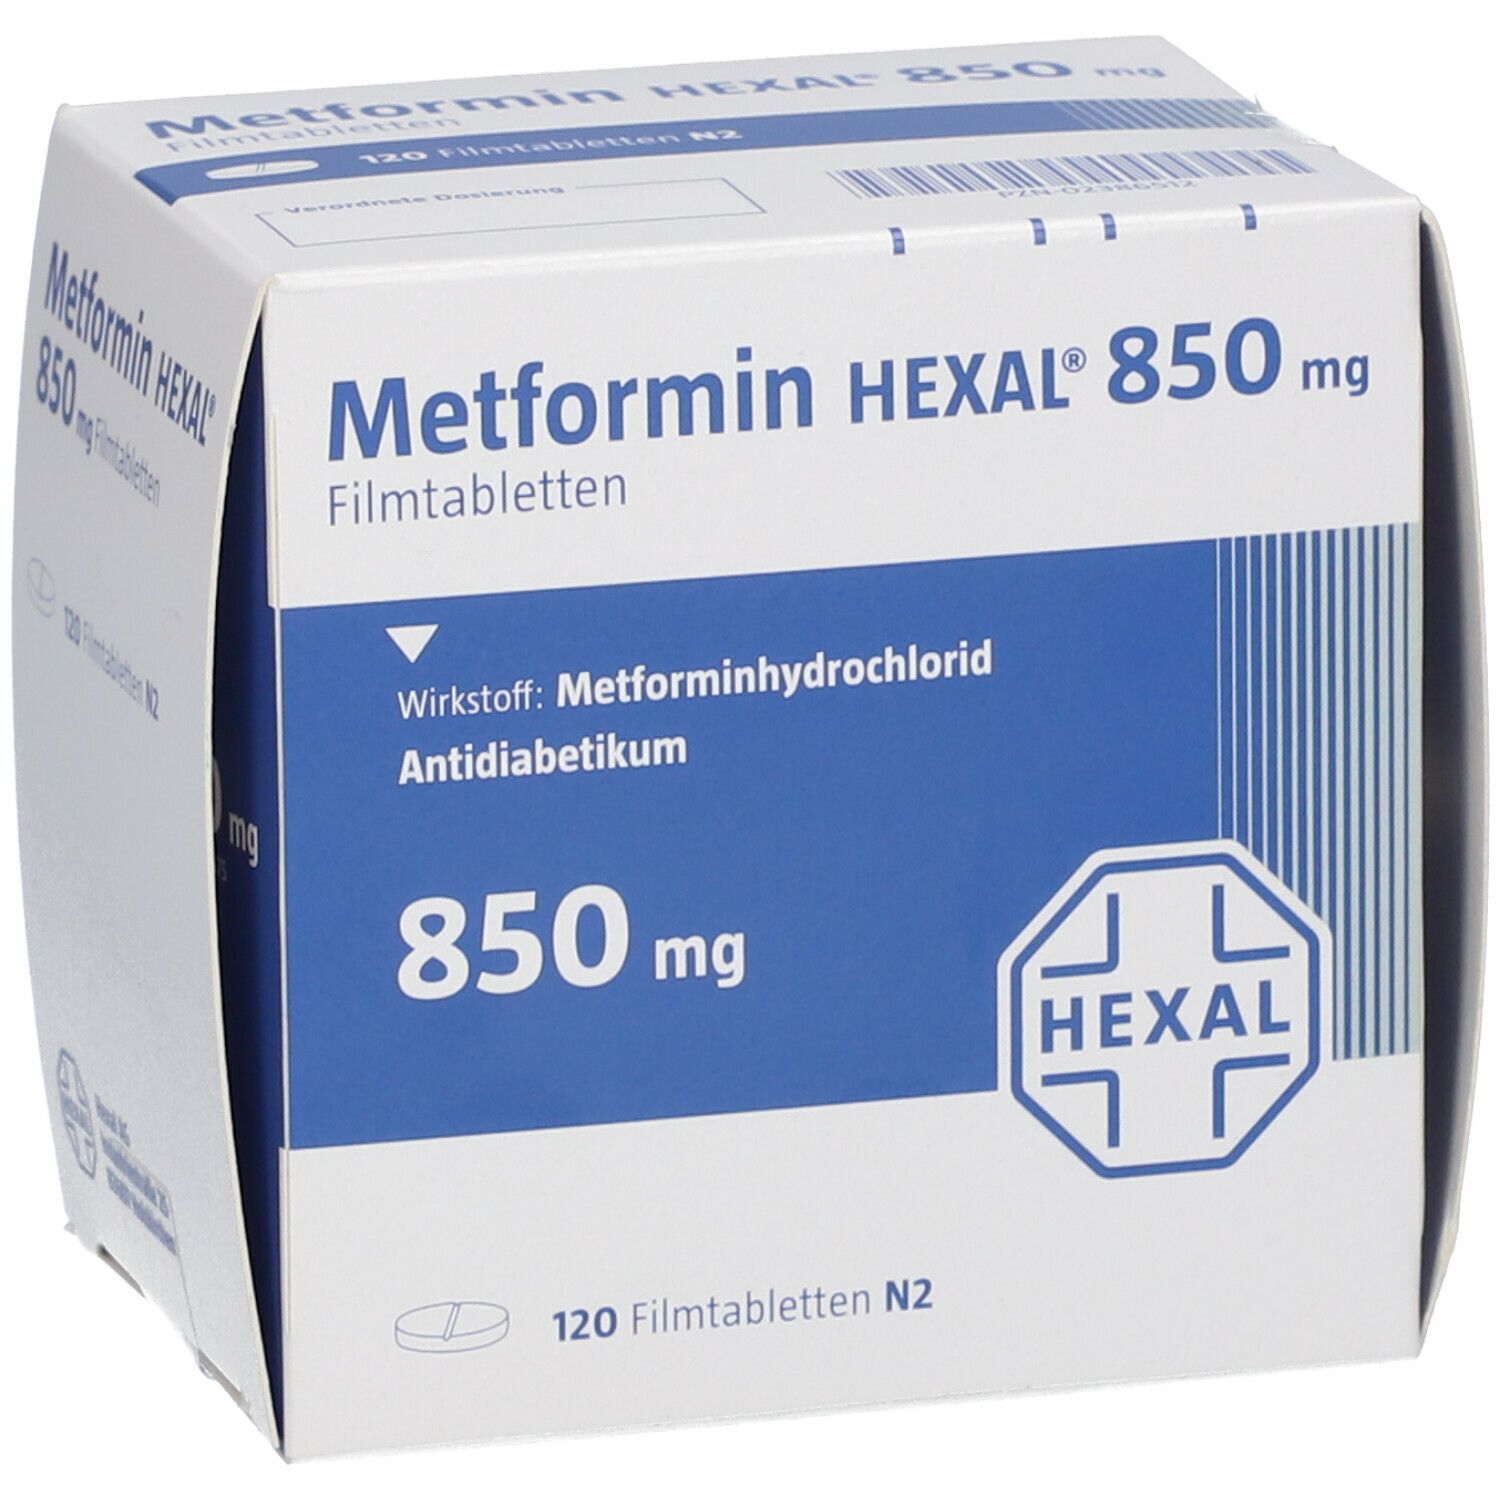 Metformin HEXAL® 850 mg